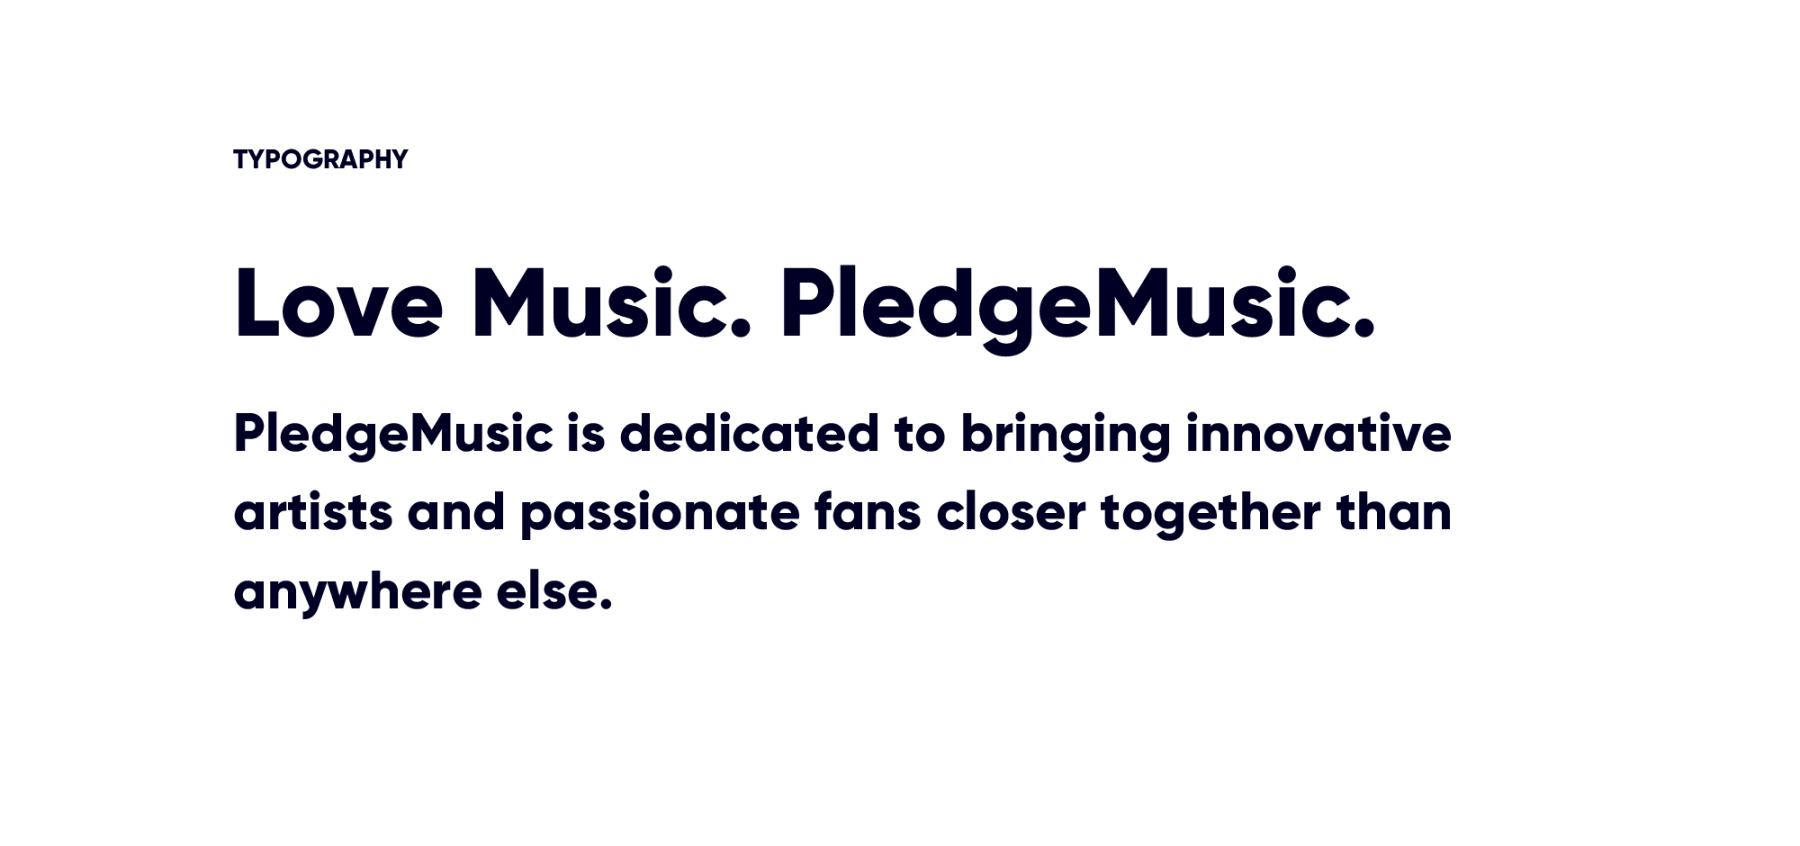 PledgeMusic typography styles